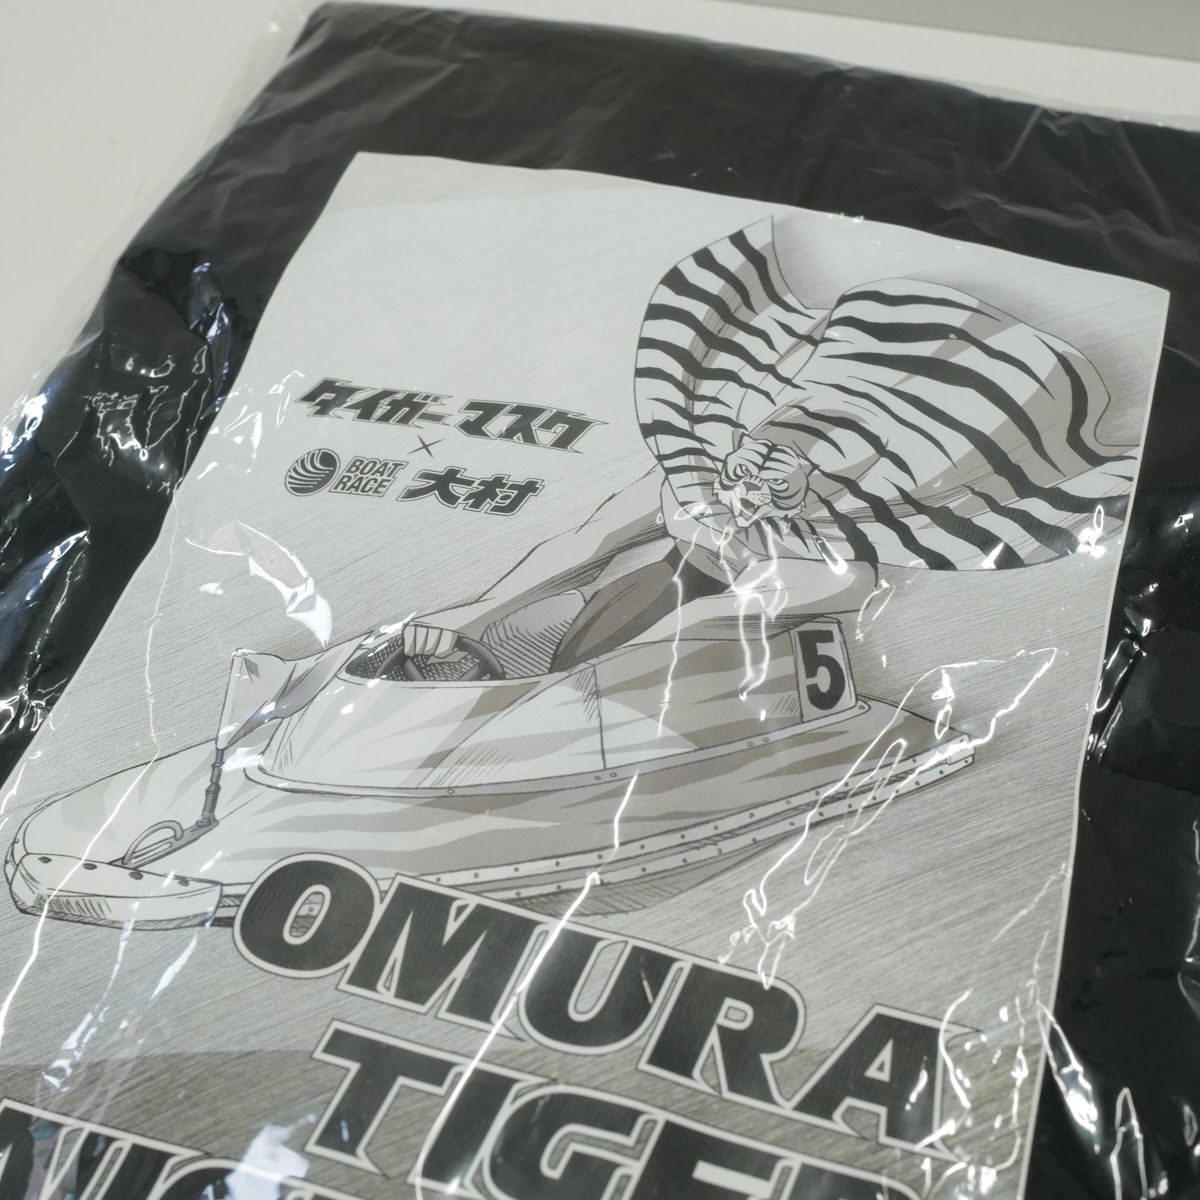  Tiger Mask × лодка гонки большой . сотрудничество футболка 2 листов большая сумка комплект новый товар L размер черный мужской лодочные гонки не продается X4942